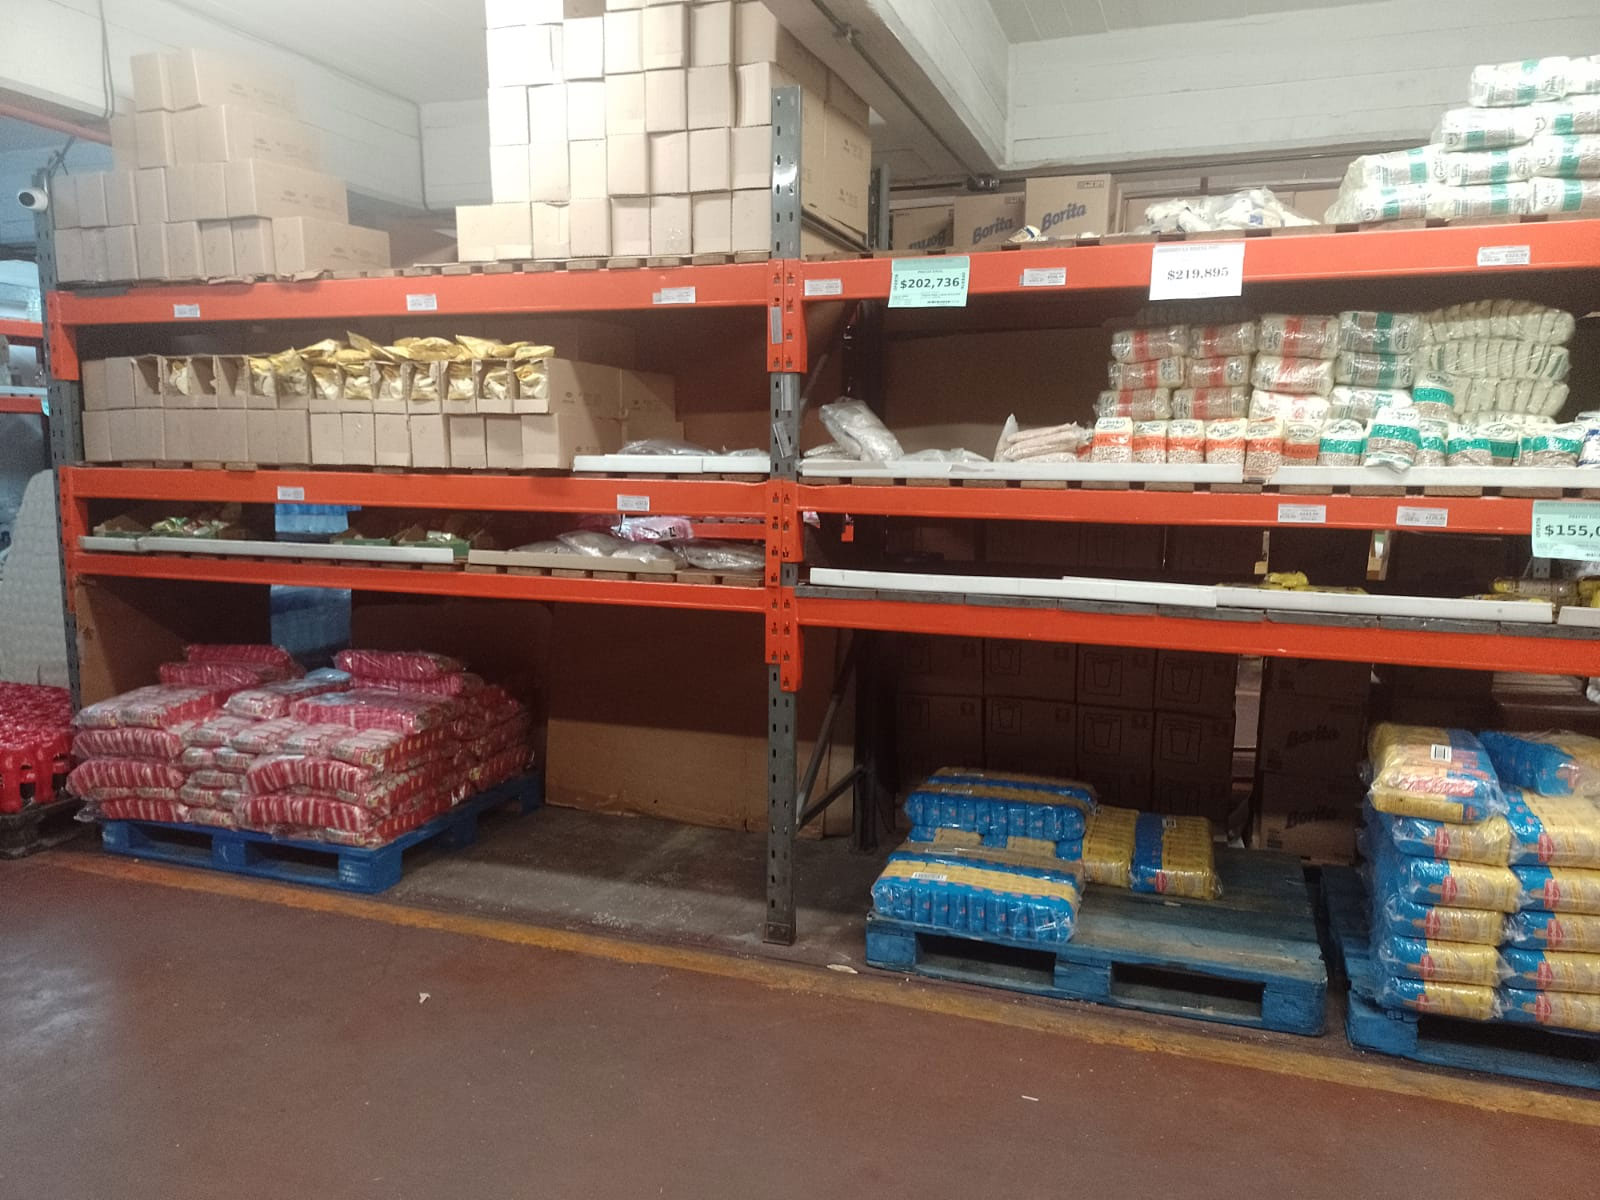 Los faltantes de arroz que se registran en la cadena mayorista Masivos, en la zona porteña de Mataderos